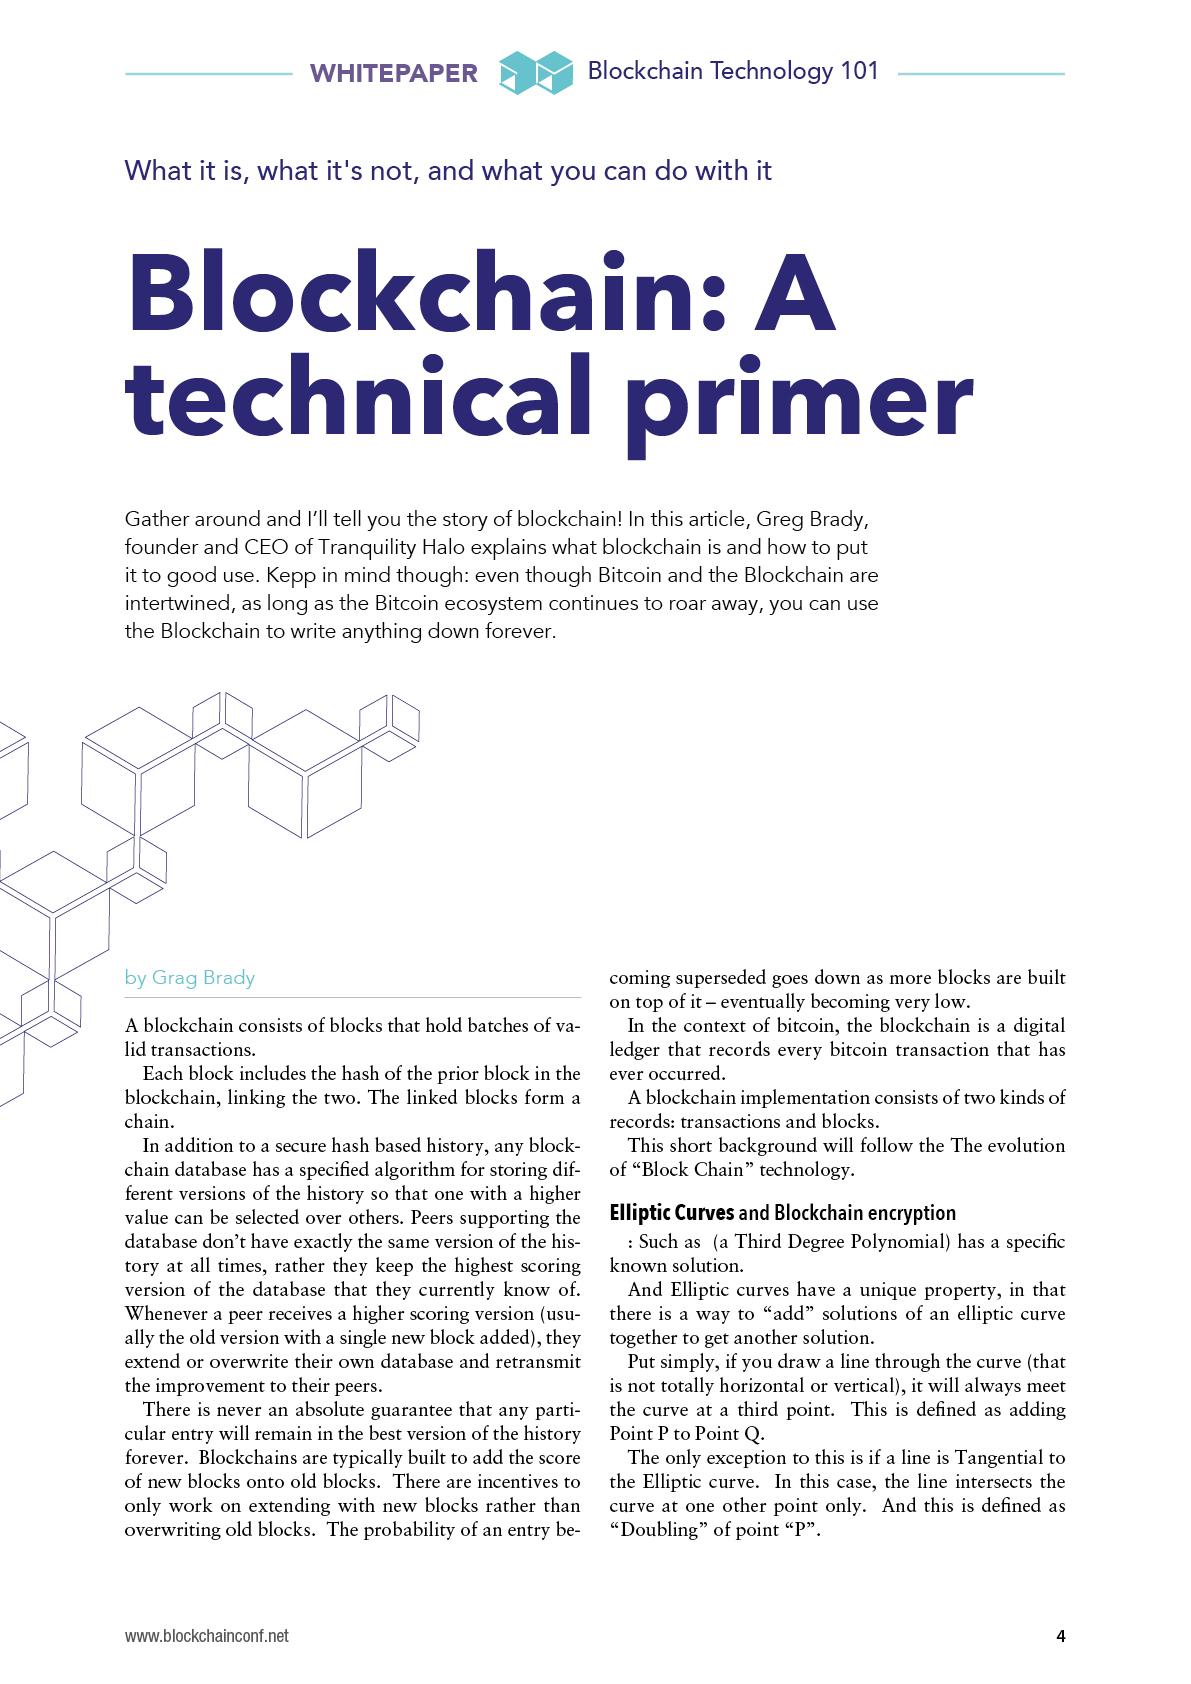 Blockchain Technology Whitepaper  blockchainconf